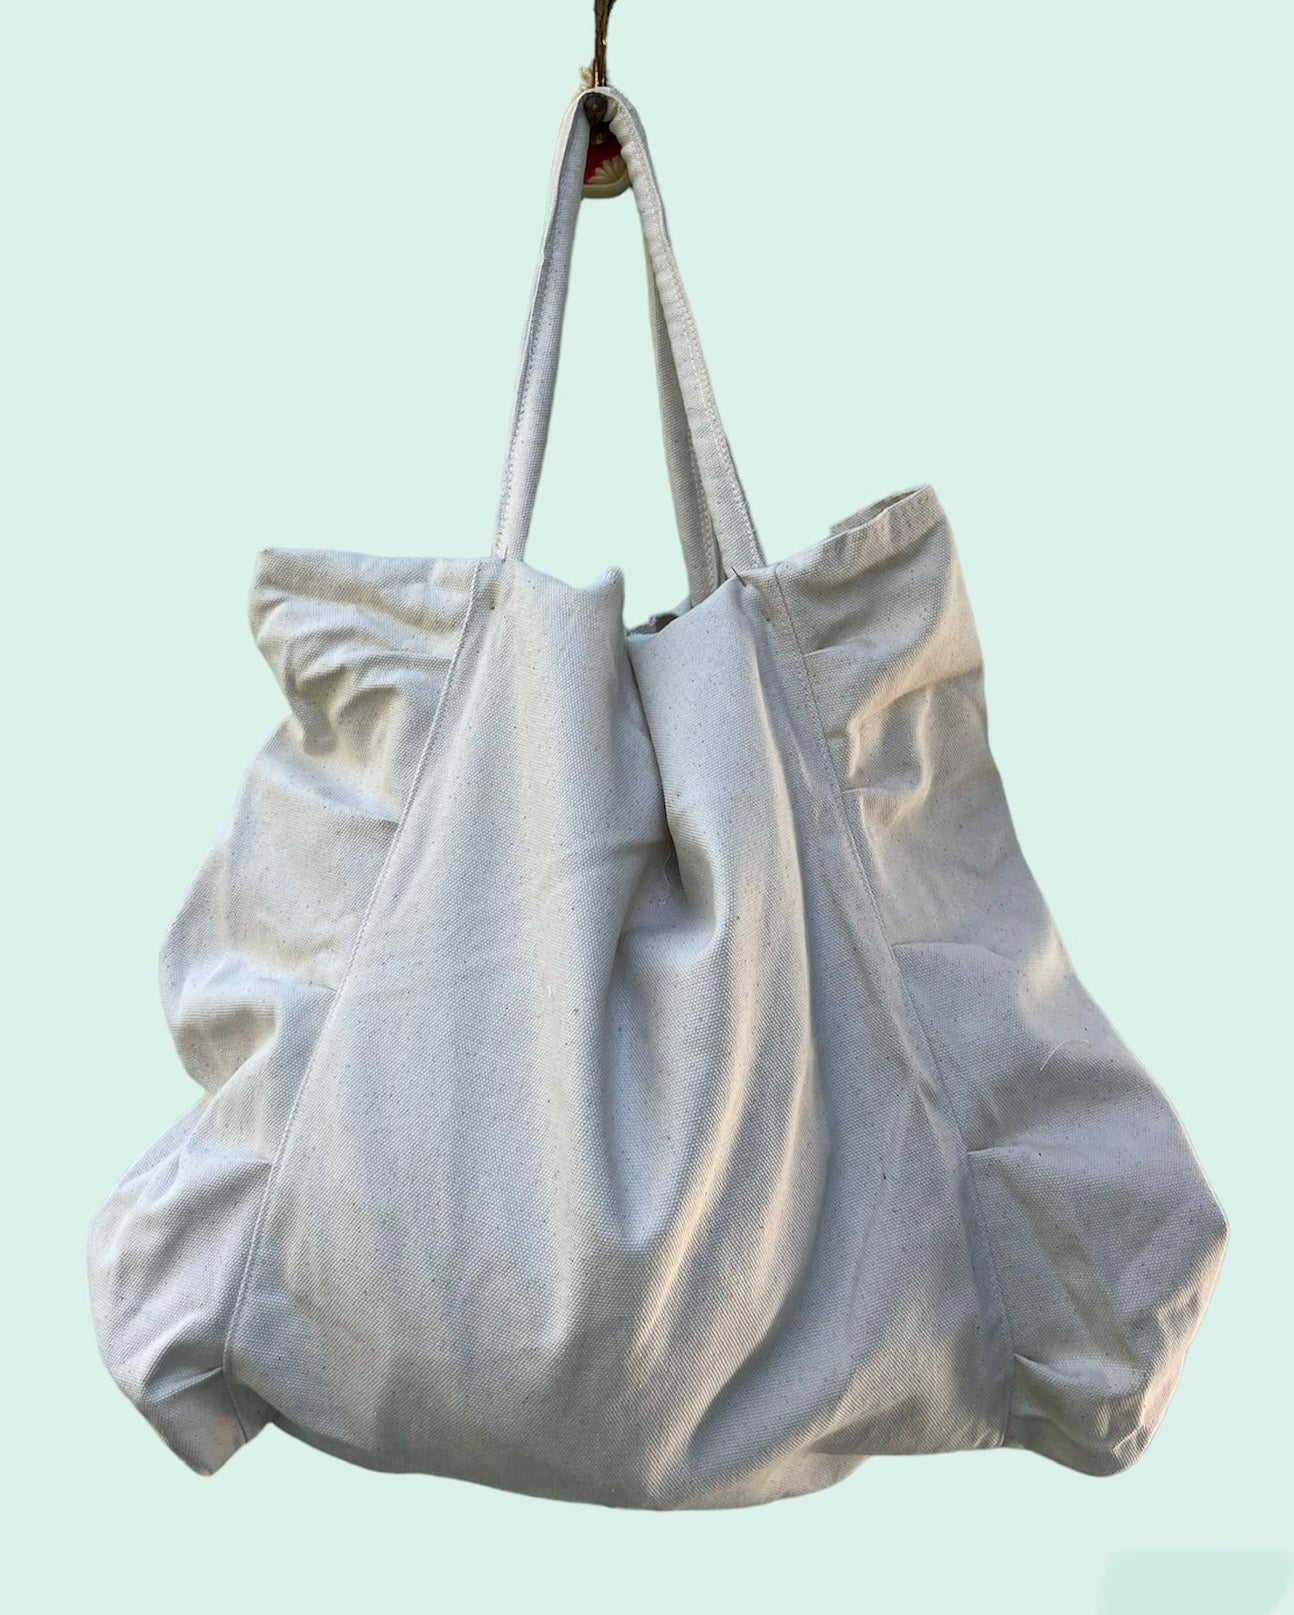 Maxi Borsa lino (maxi linen bag)